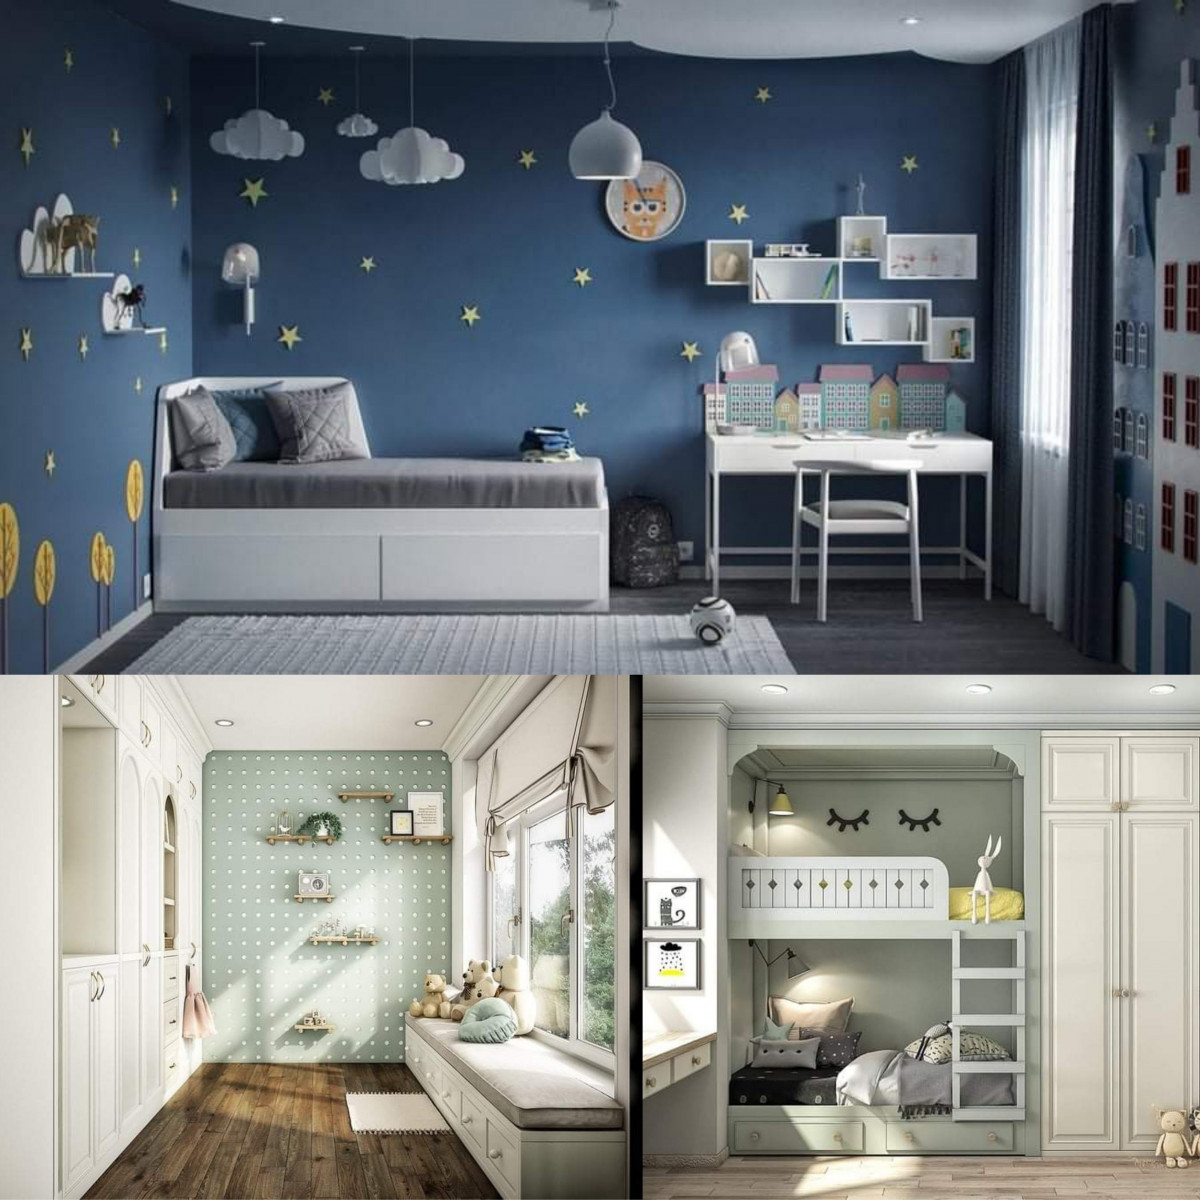 Một số mẫu thiết kế phòng ngủ dành cho các bé gái, bé trai tại căn hộ Vinhomes Grand Park